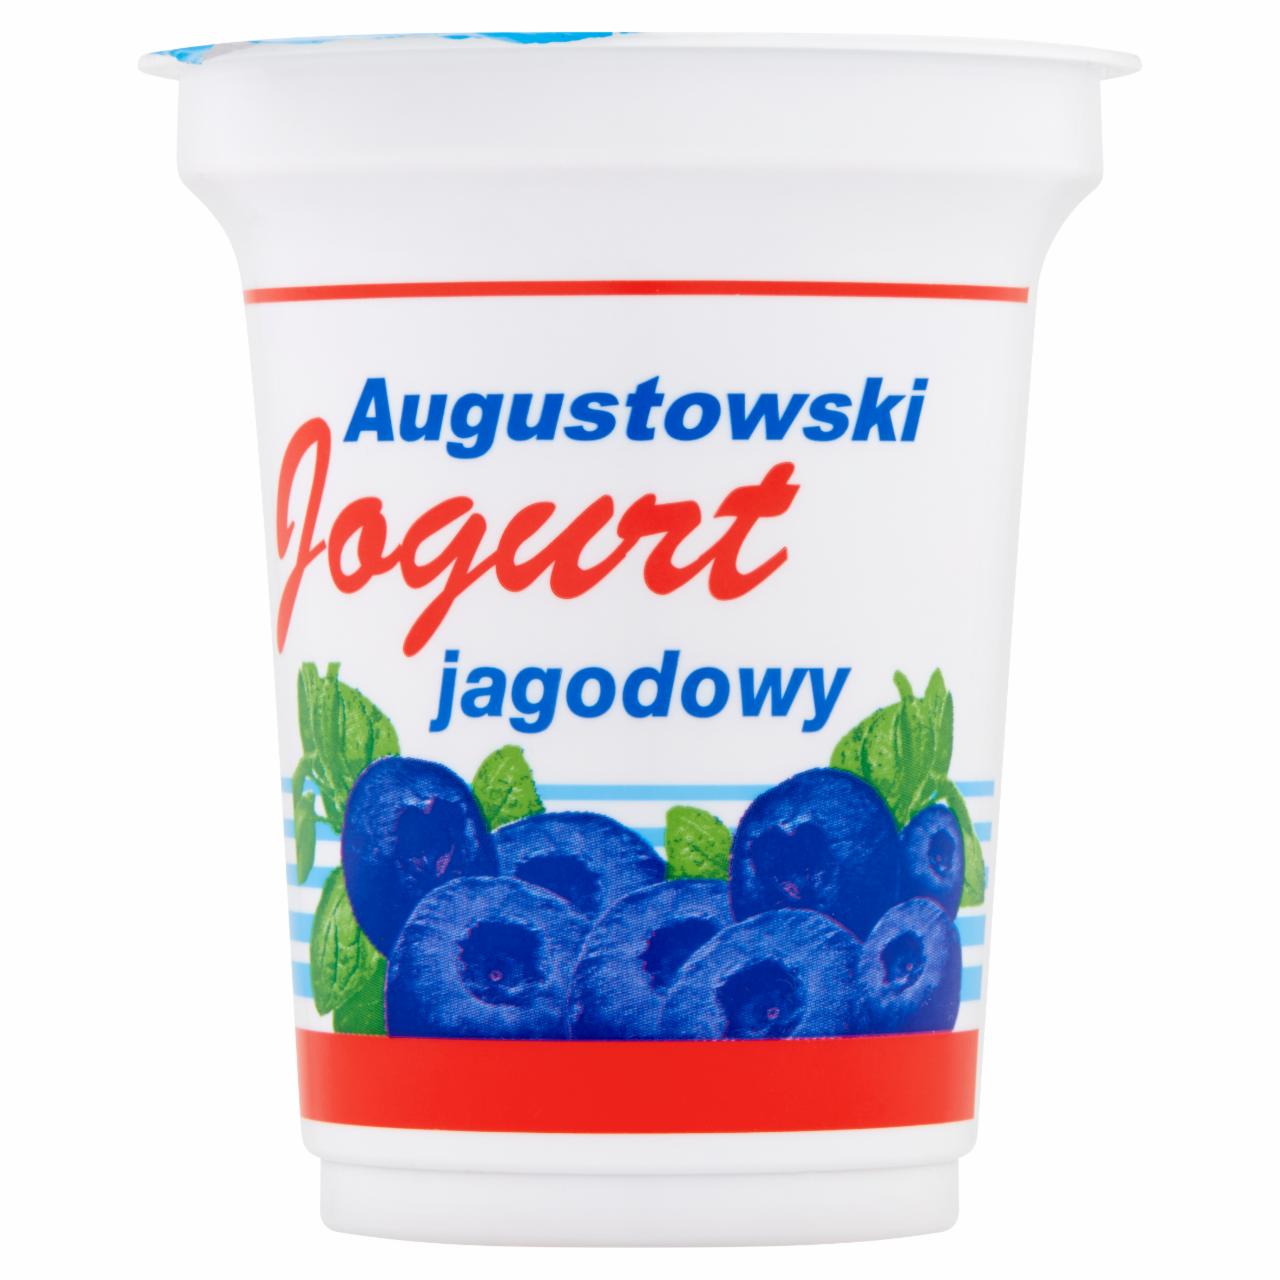 Zdjęcia - Augustowski jogurt jagodowy Mlekpol